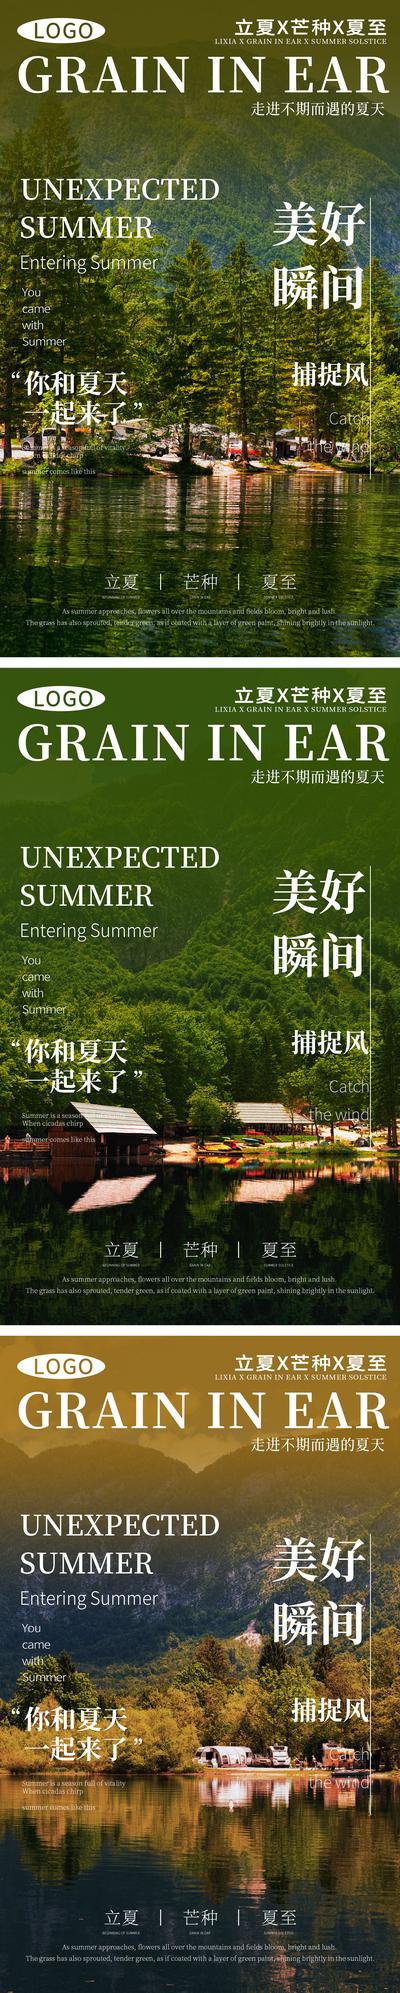 南门网 广告 海报 节气 立夏 风景 系列